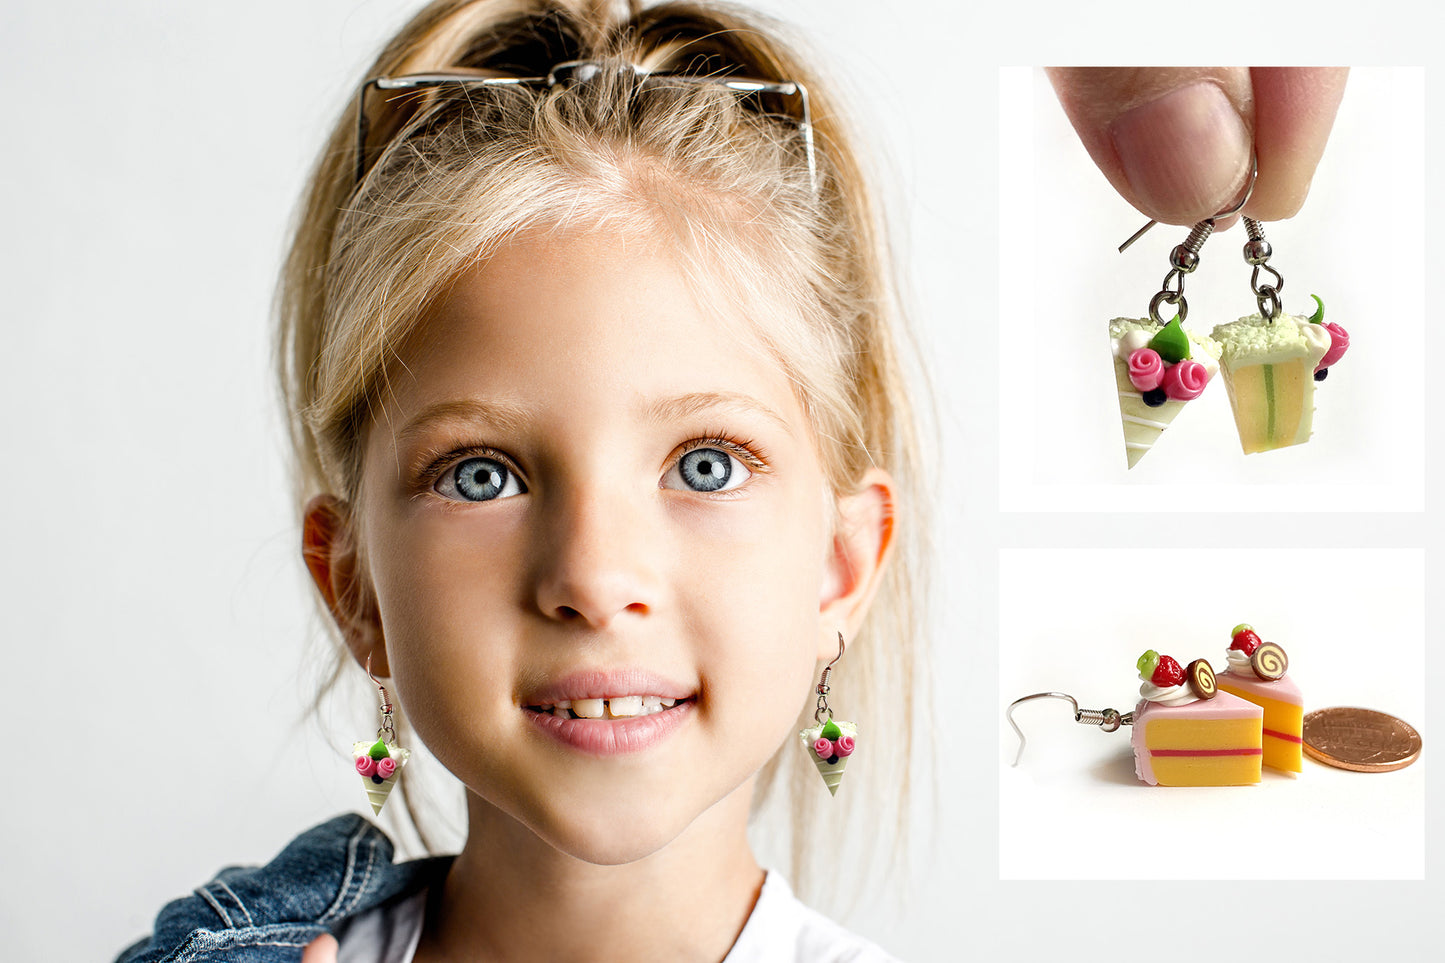 Handmade miniature food model earrings for Girls Teen - Slice Cake Heart 2 Roses